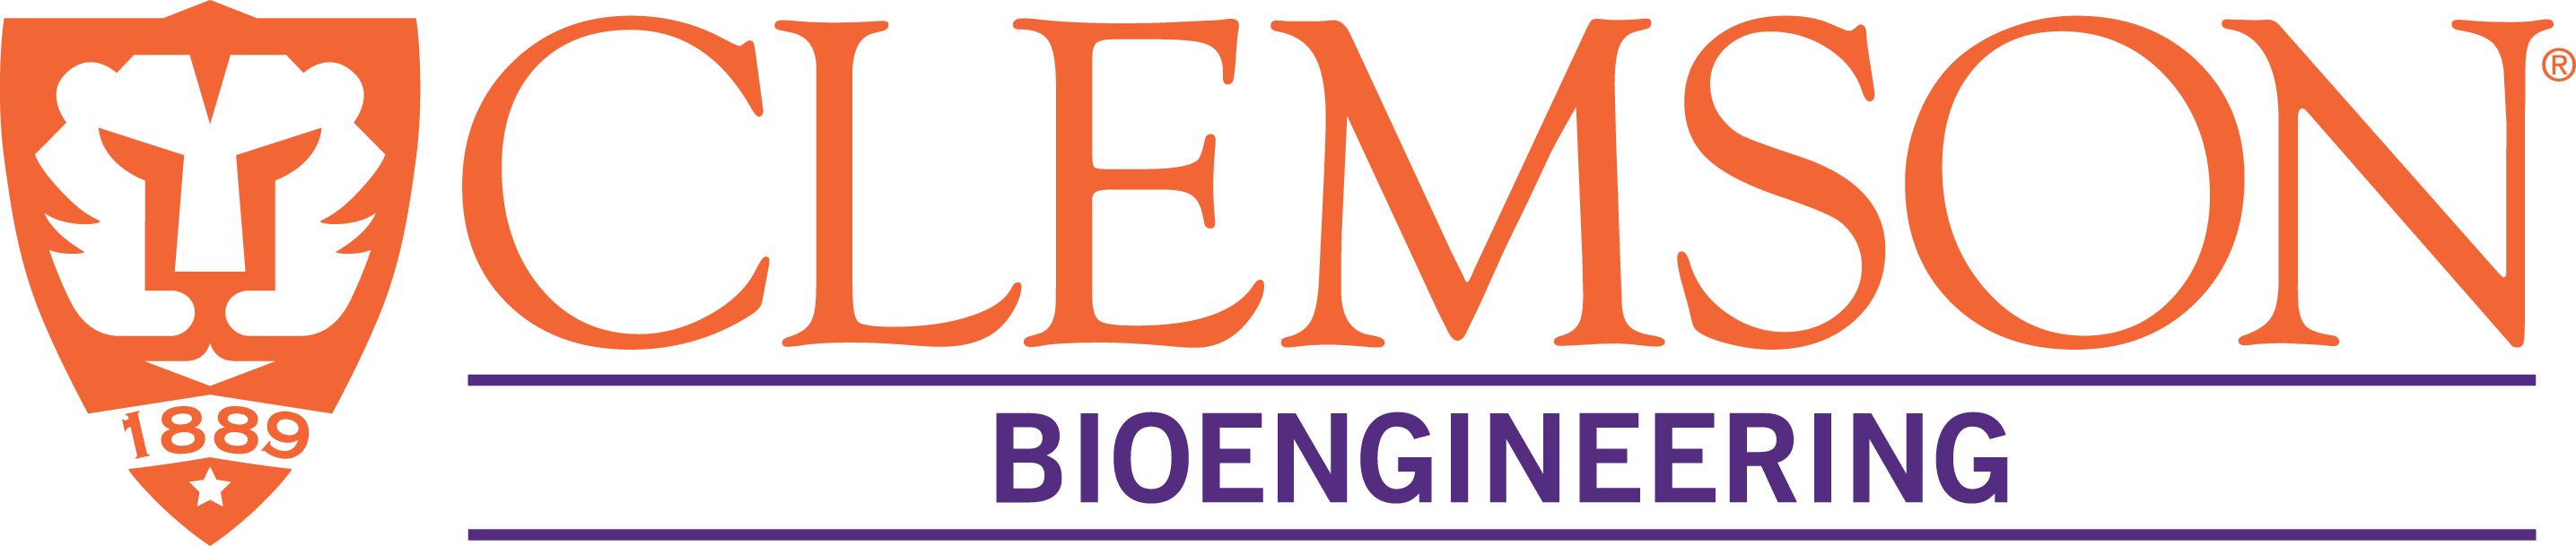 Bioengineering logo